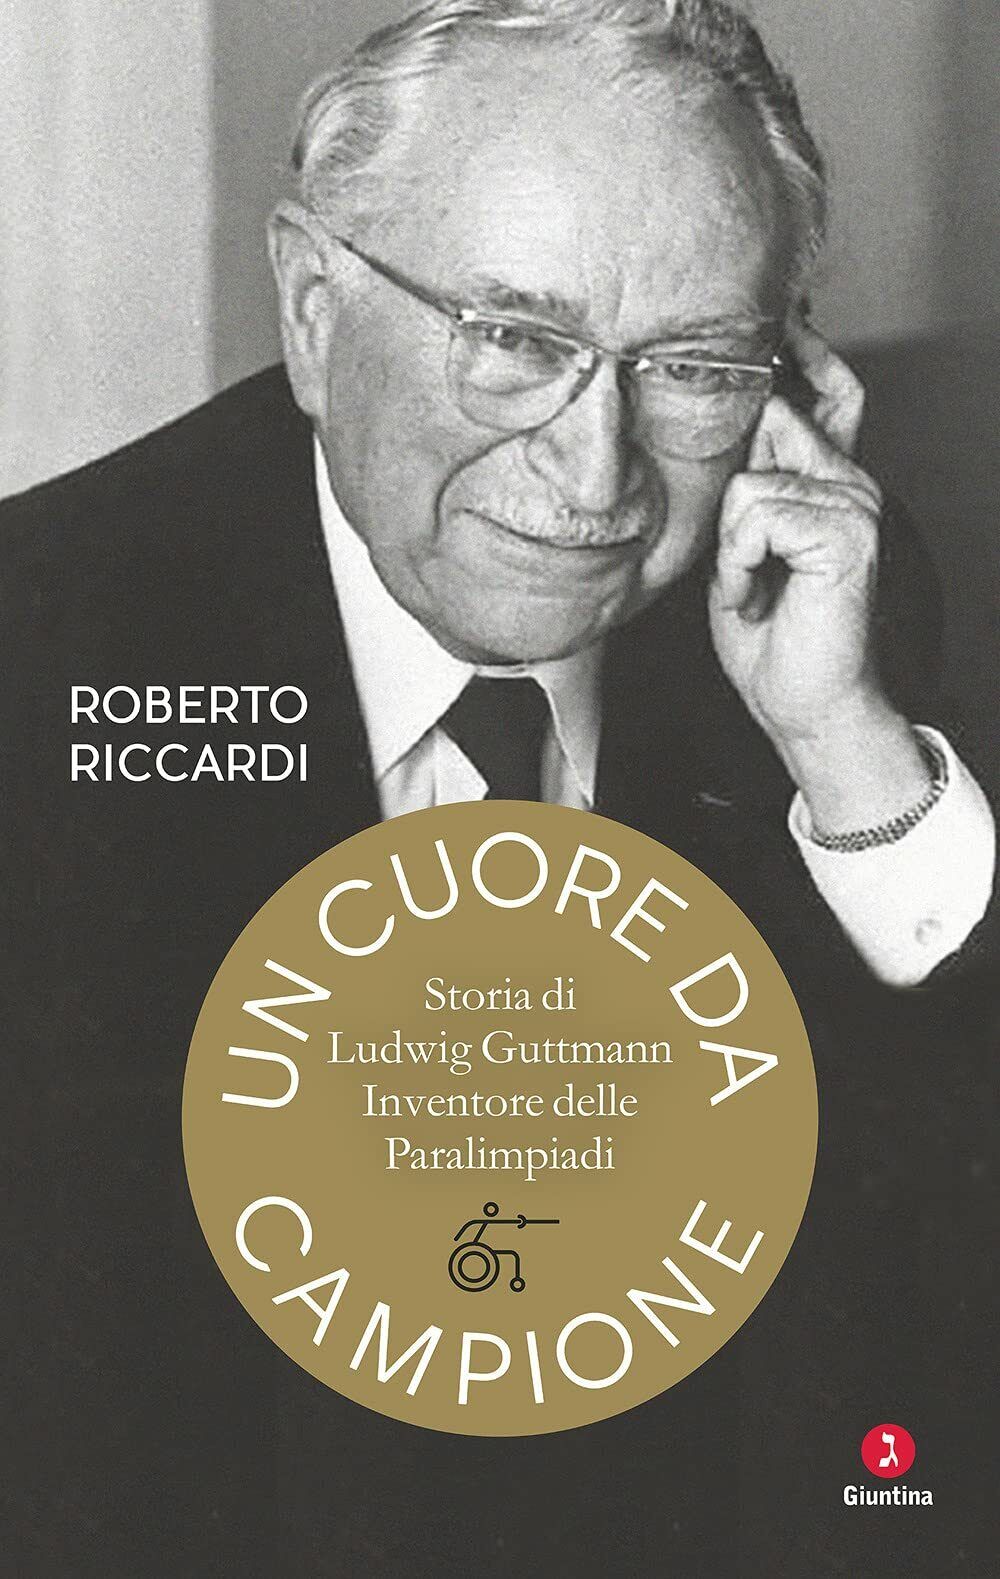 Un cuore da campione - Roberto Riccardi - Giuntina, 2021